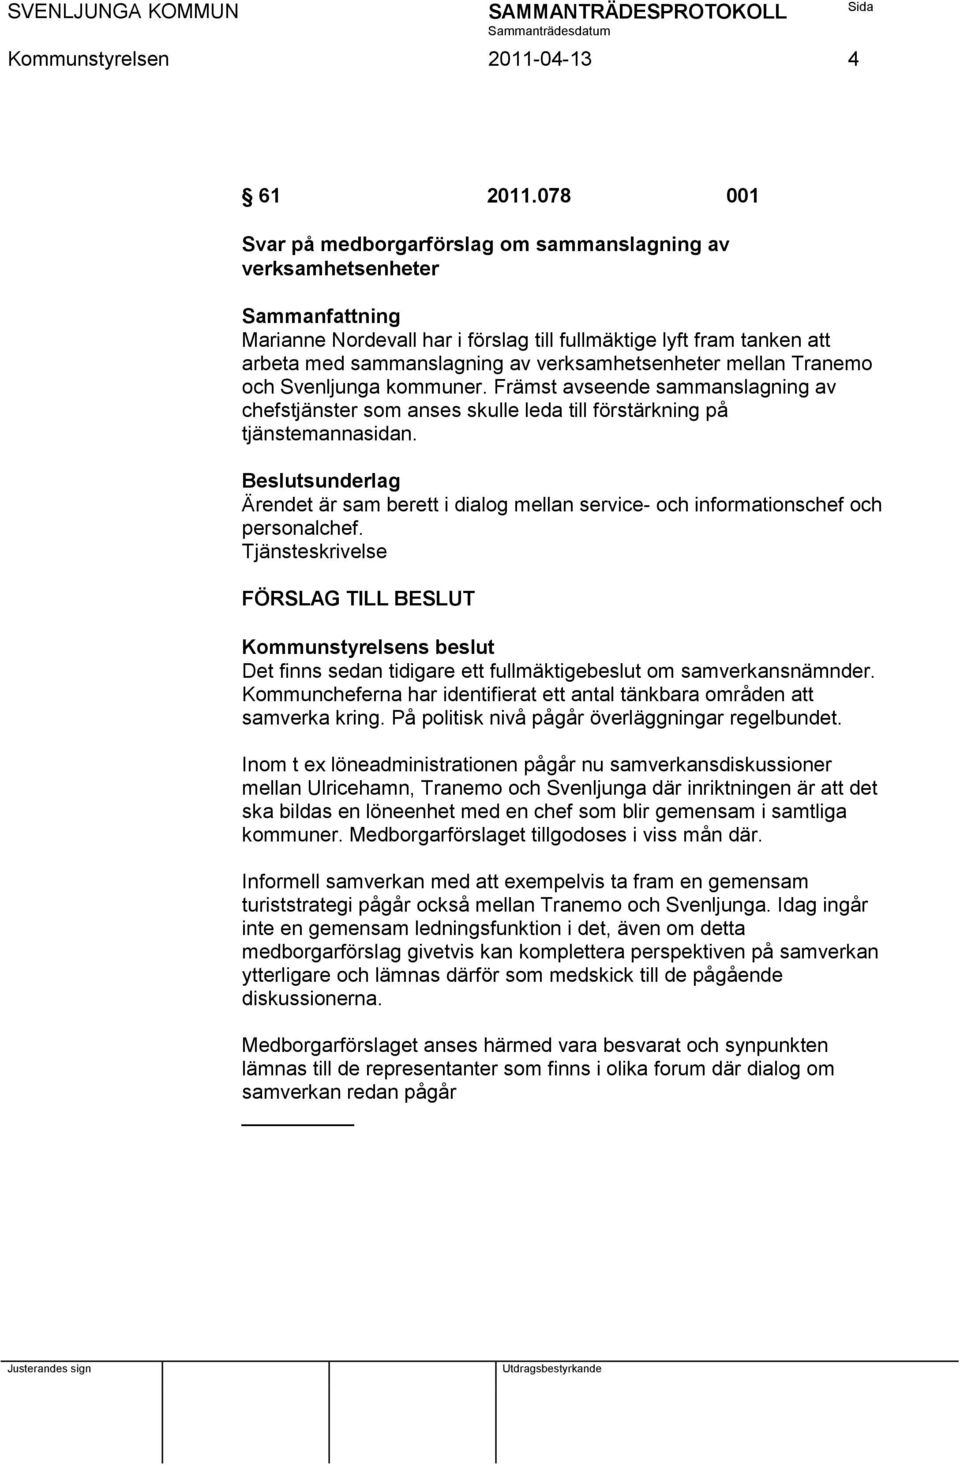 Tranemo och Svenljunga kommuner. Främst avseende sammanslagning av chefstjänster som anses skulle leda till förstärkning på tjänstemannasidan.